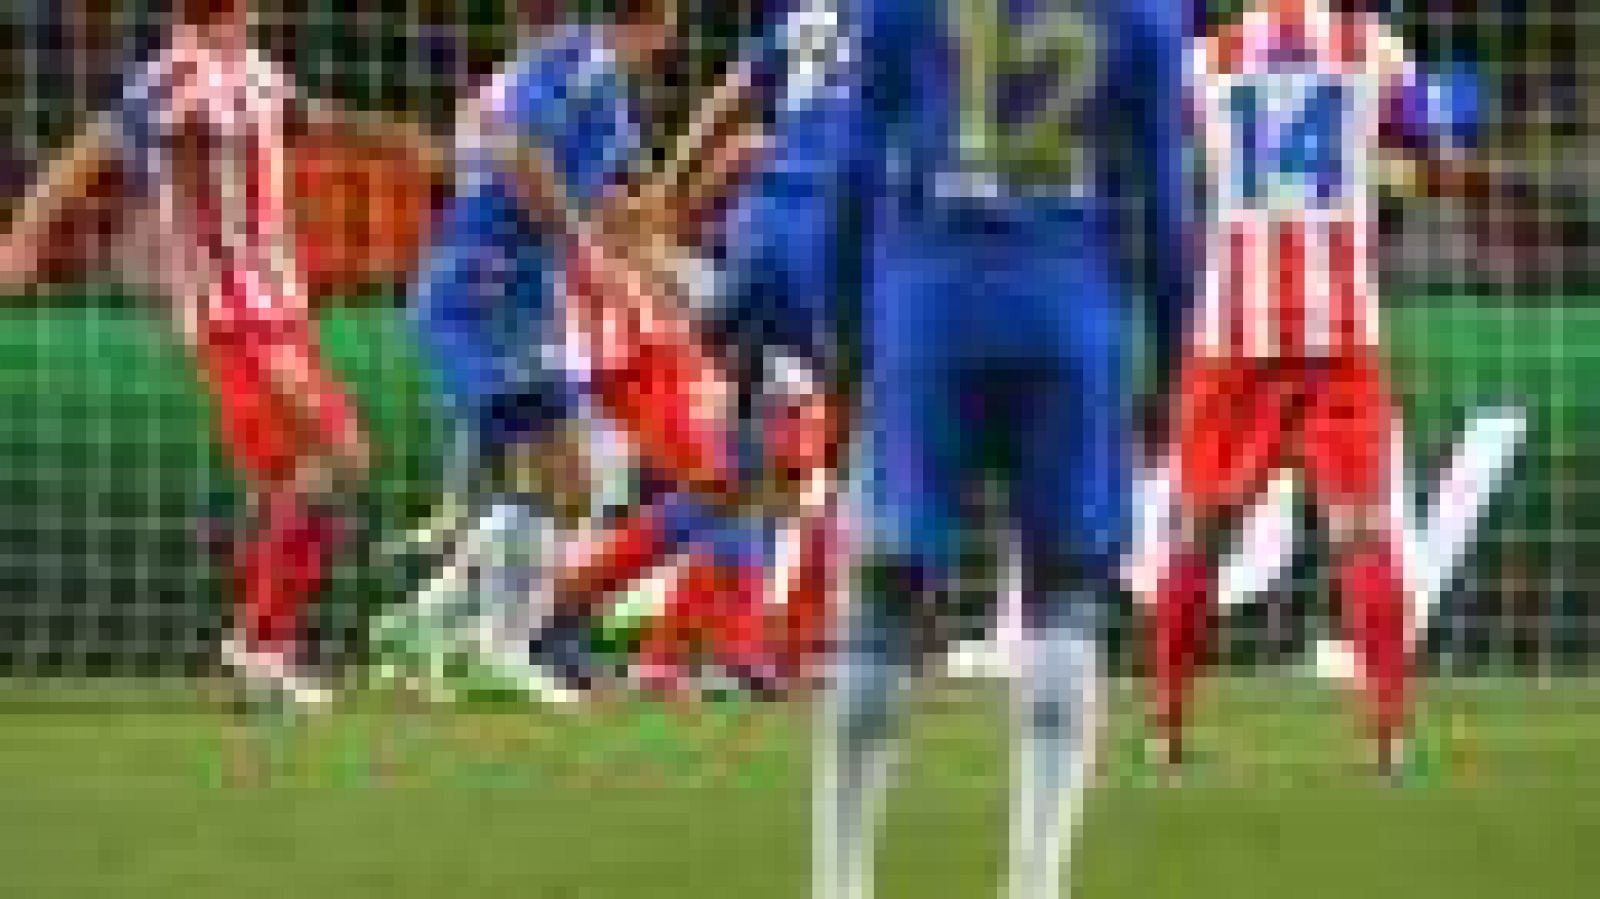 El jugador del Chelsea Cahill marcó en la sgunda mitad el primer y único tanto de su equipo en la final de la Supercopa de Europa, en la que se vio superado por el Atlético de Madrid.